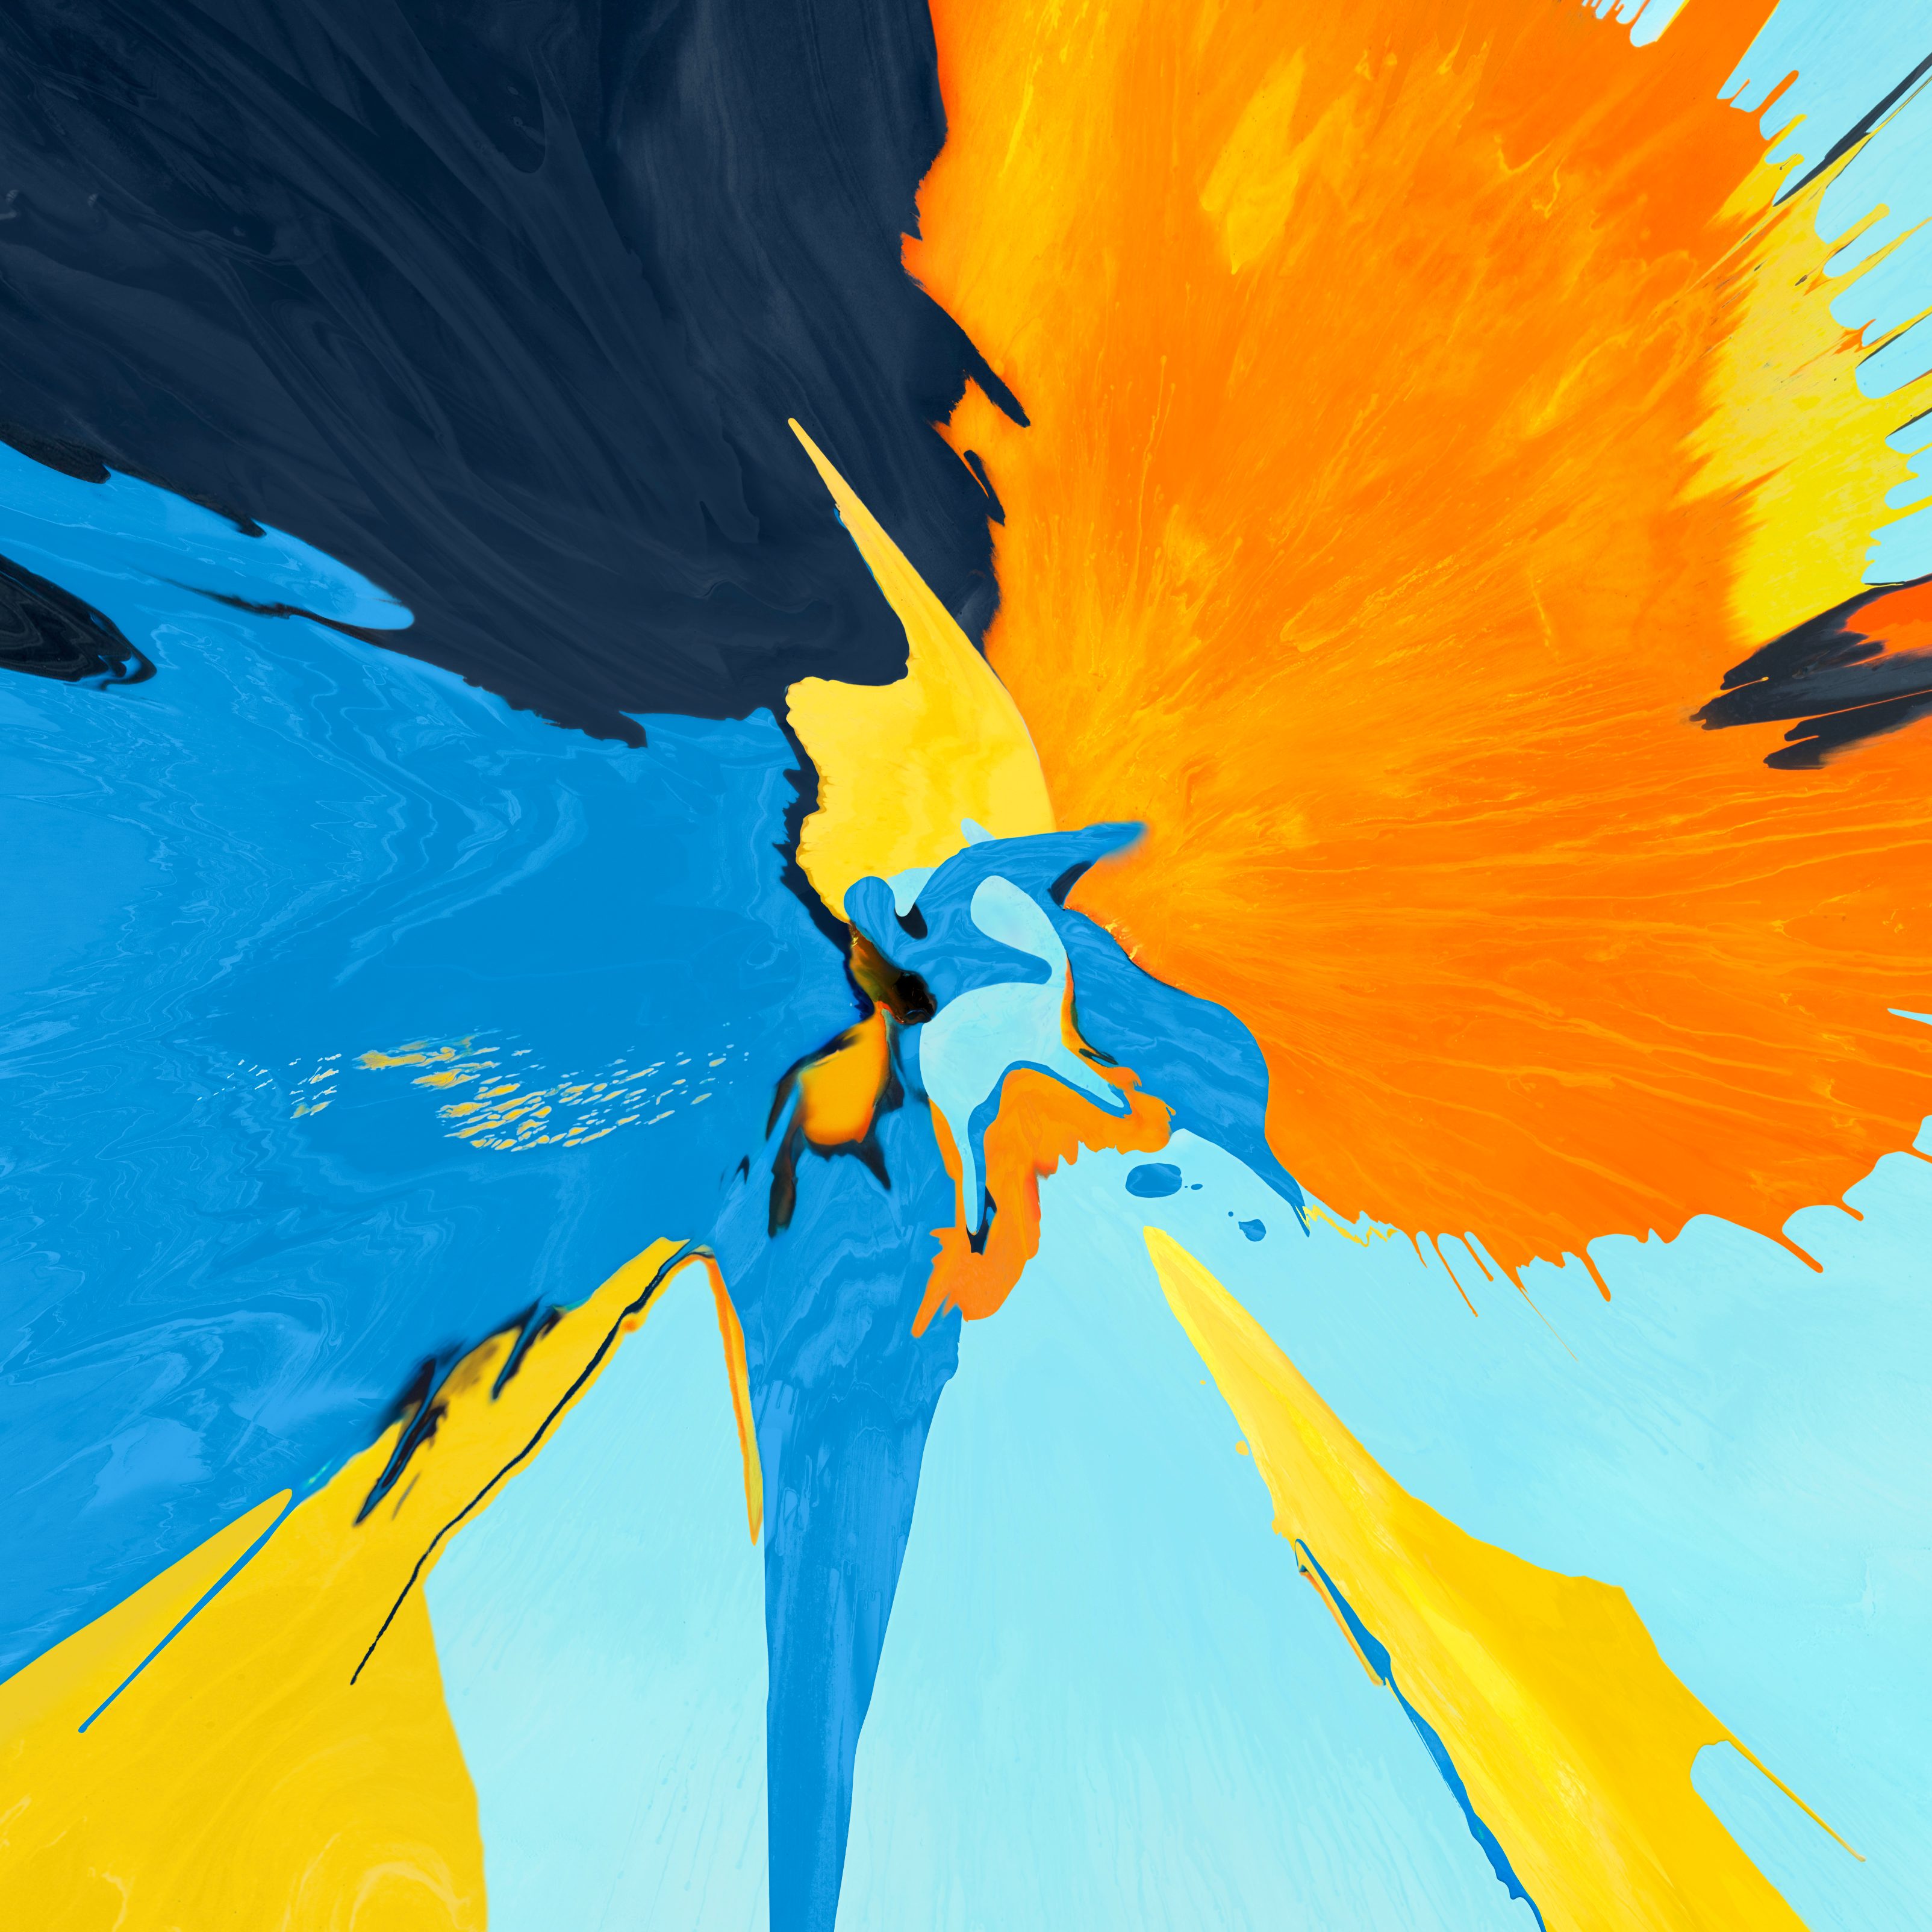 descarga de fondos de pantalla,amarillo,azul,pintura,naranja,pintura acrilica